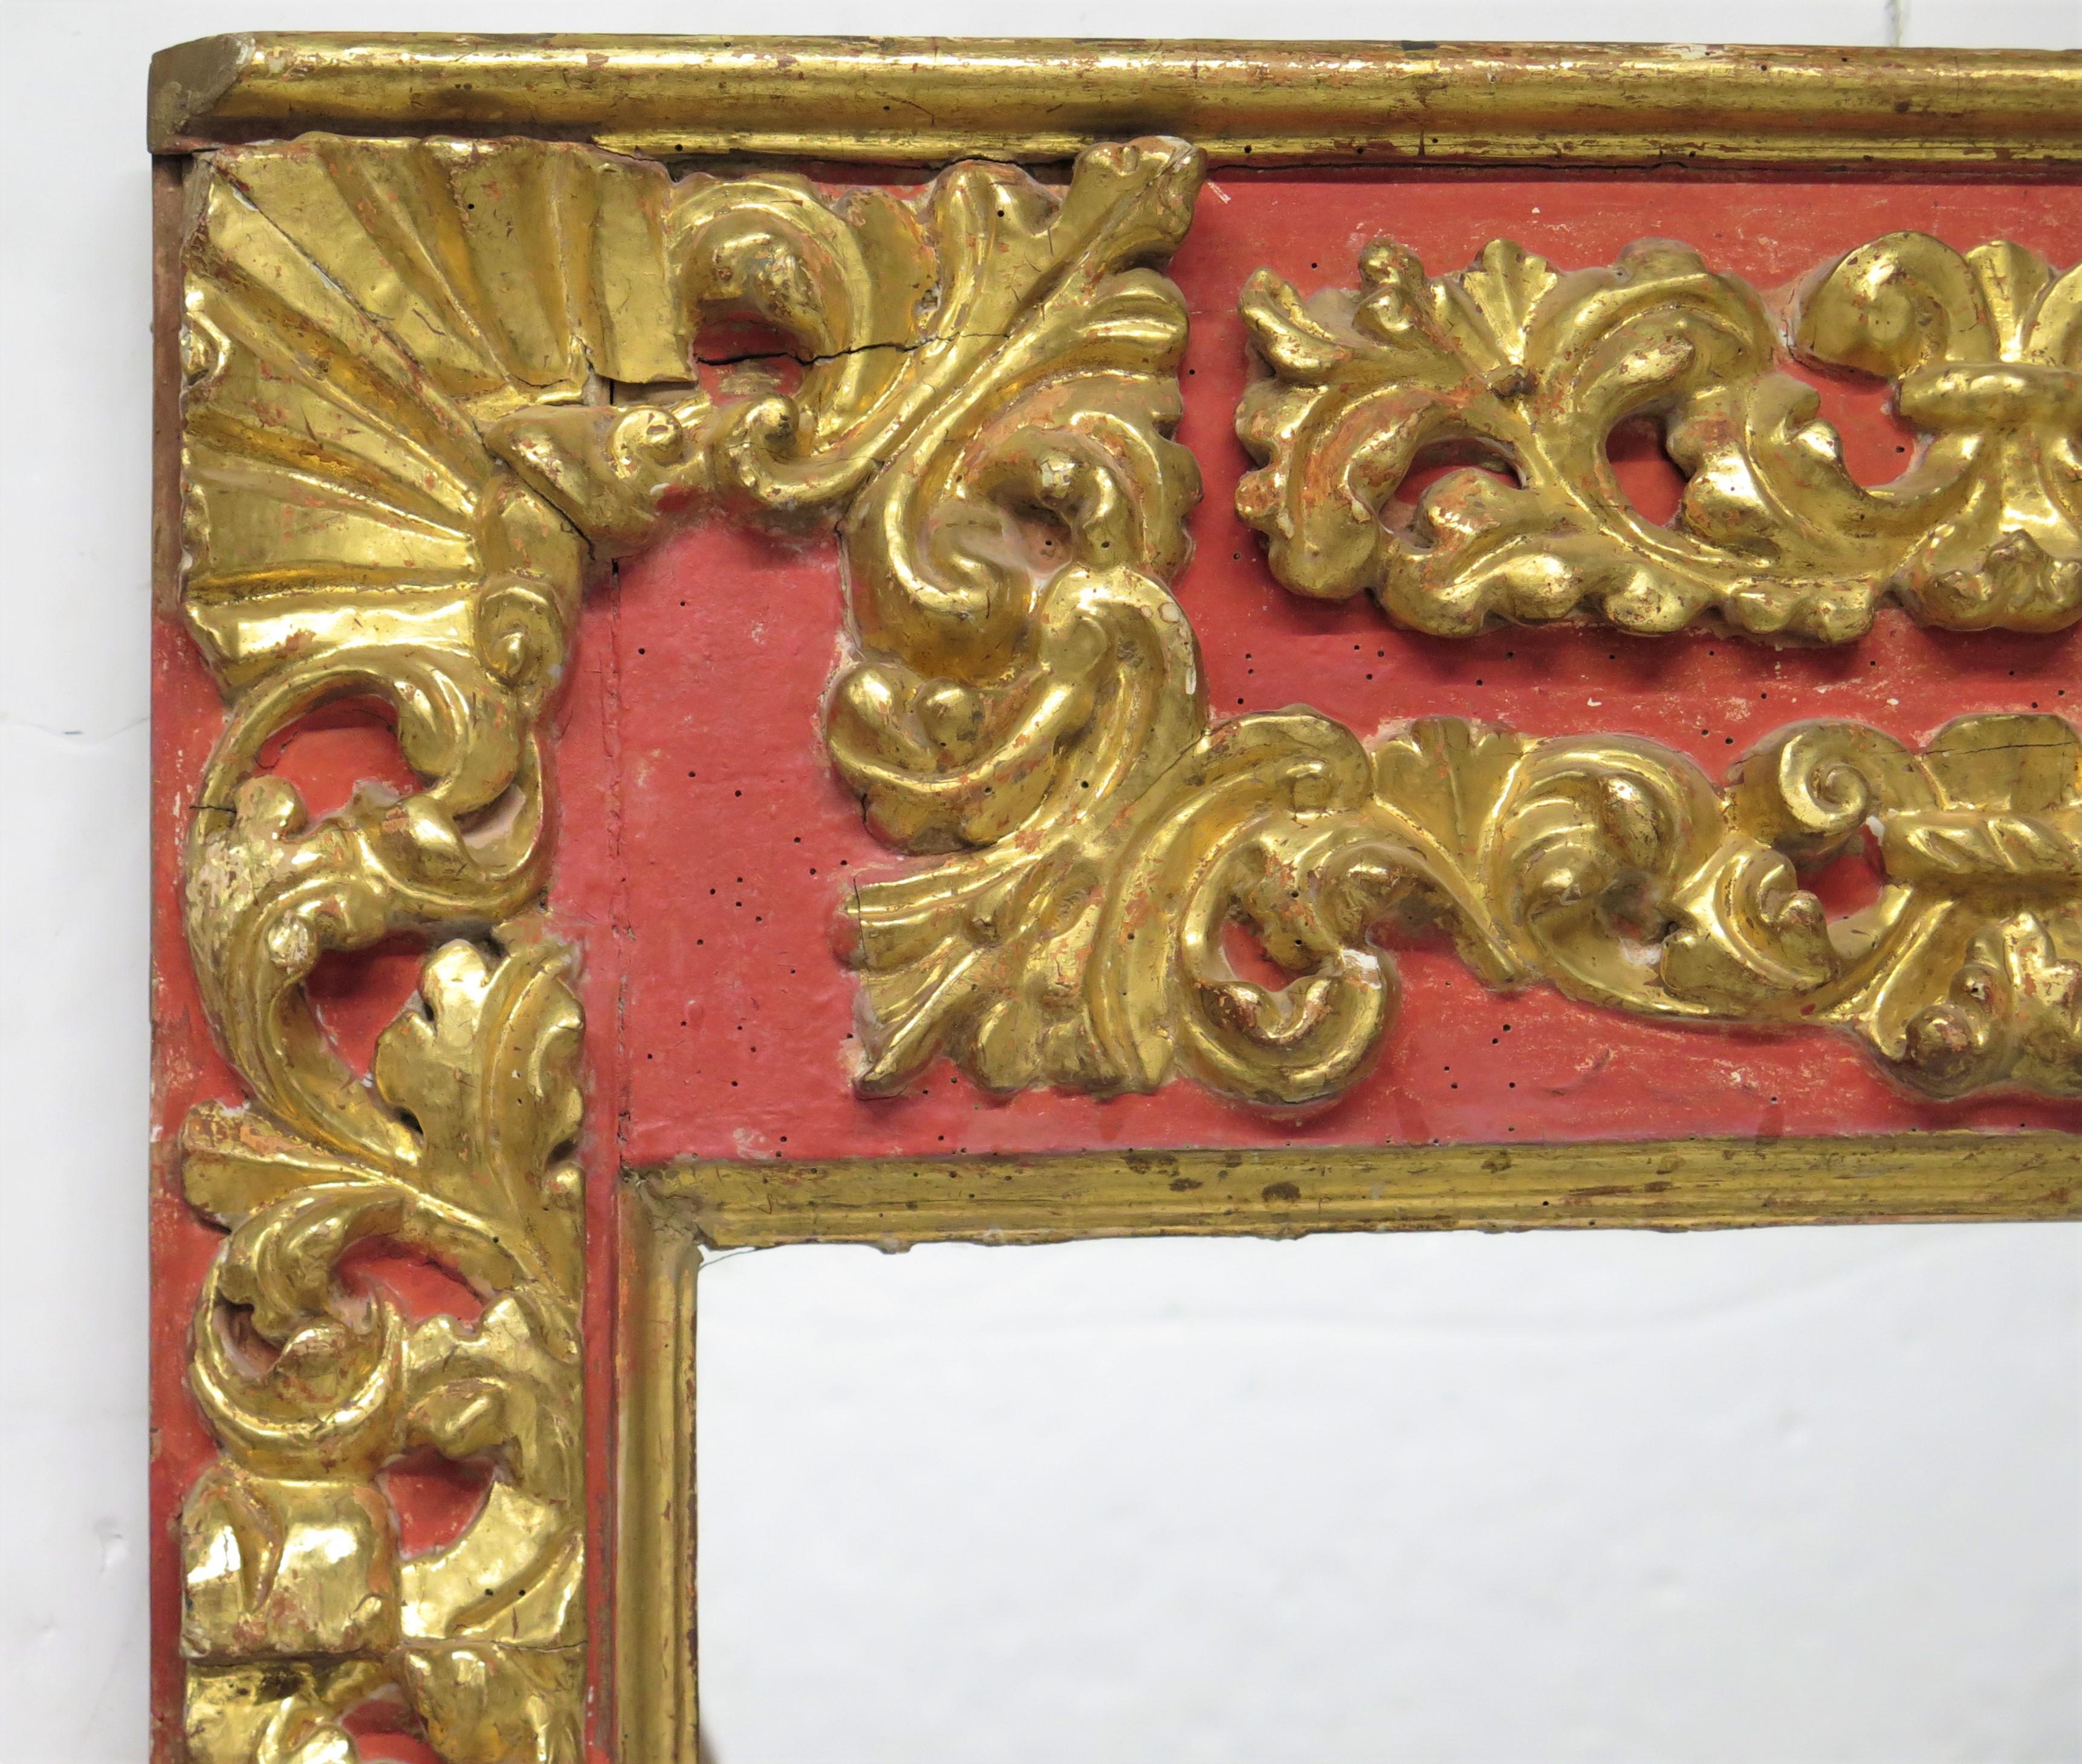 ein Paar großer handgeschnitzter und vergoldeter spanischer Kolonial-/Barockspiegel, jeweils mit flacher Spiegelplatte, Puttenköpfe auf jeder Seite, rot   

MASSNAHMEN:

62